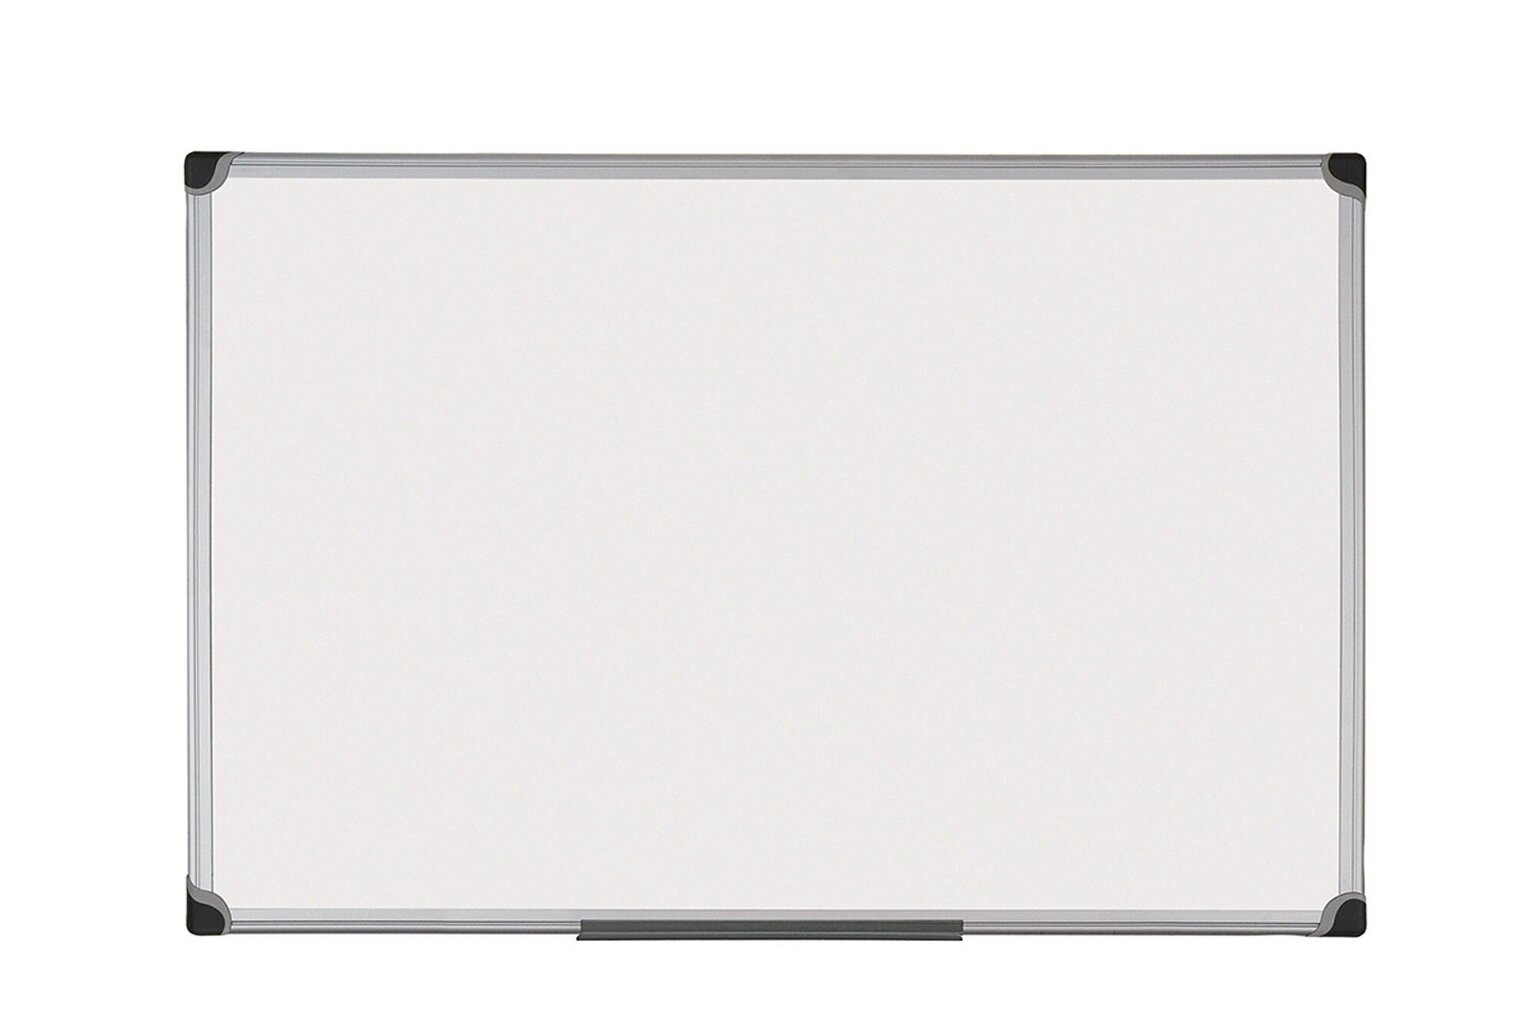 Magnetinė lakuota balta lenta, 1800x1200 mm kaina ir informacija | Kanceliarinės prekės | pigu.lt